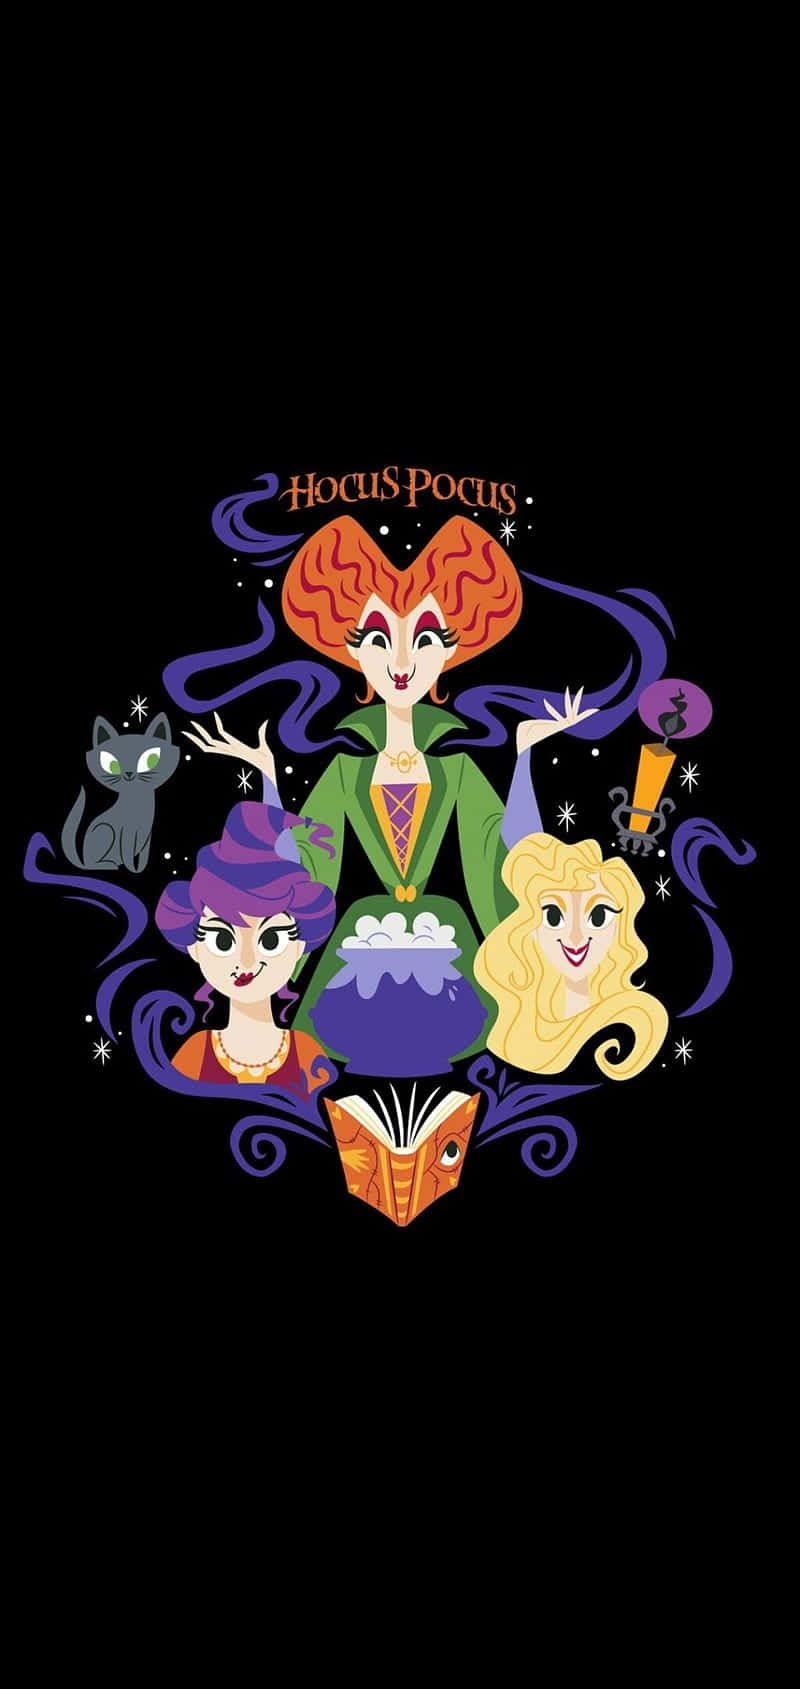 Hocus Pocus Witches Illustration Wallpaper